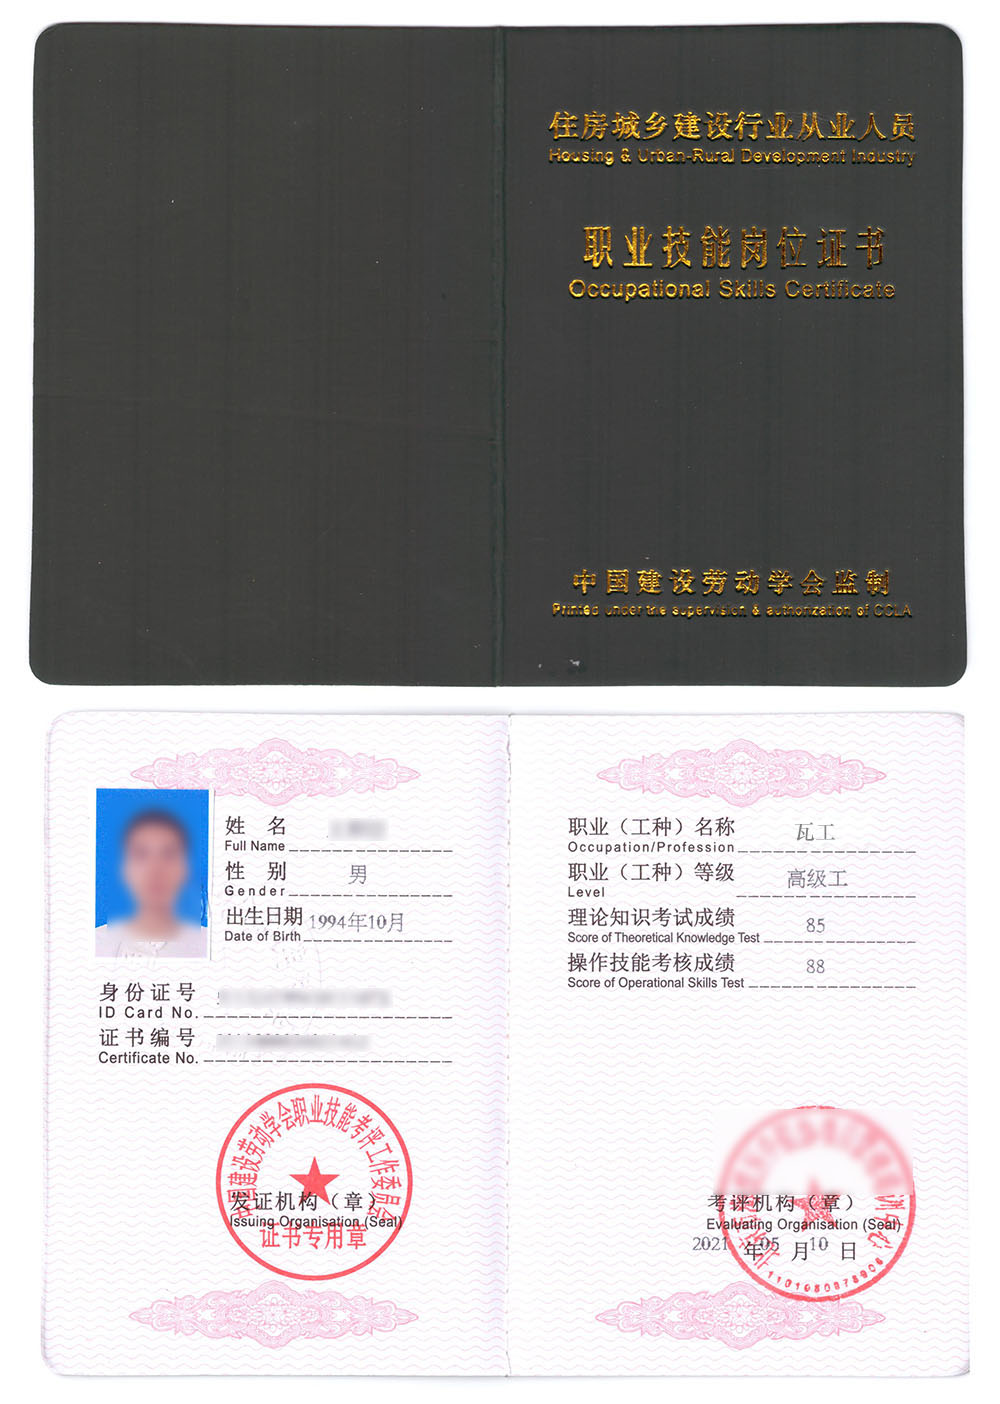 中国建设劳动学会 职业技能岗位证书 瓦工证证书样本